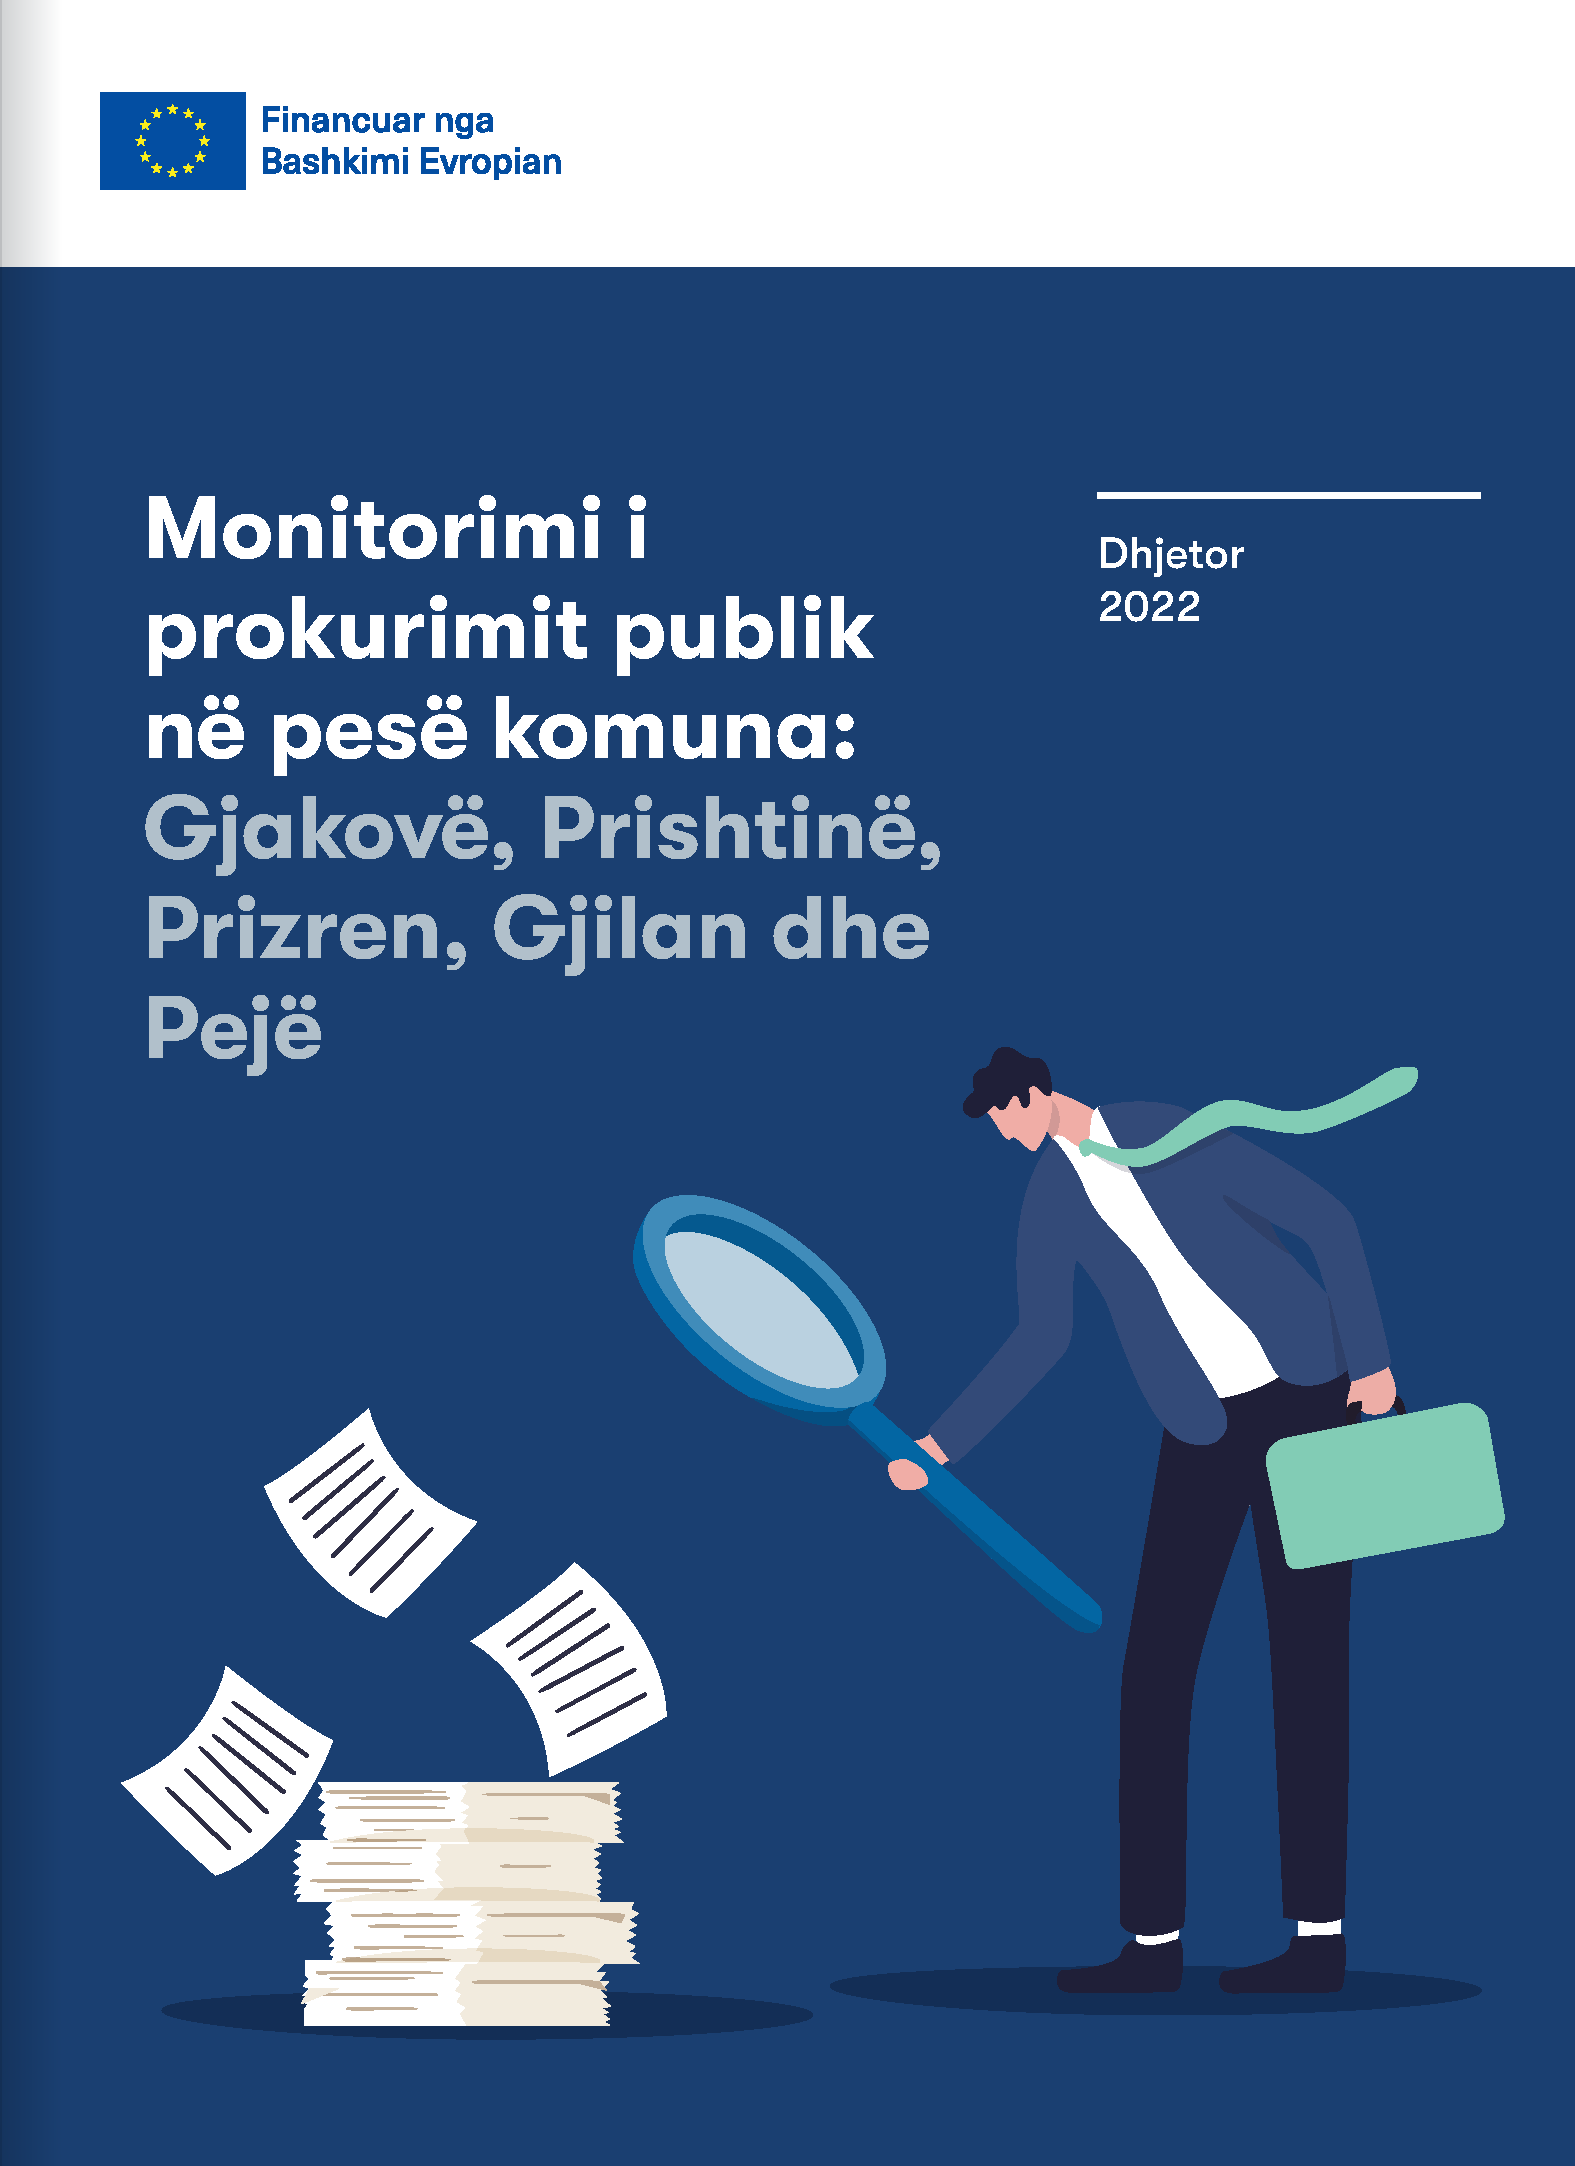 Monitorimi i prokurimit publik në pesë komuna: Gjakovë, Prishtinë, Prizren, Gjilan dhe Pejë